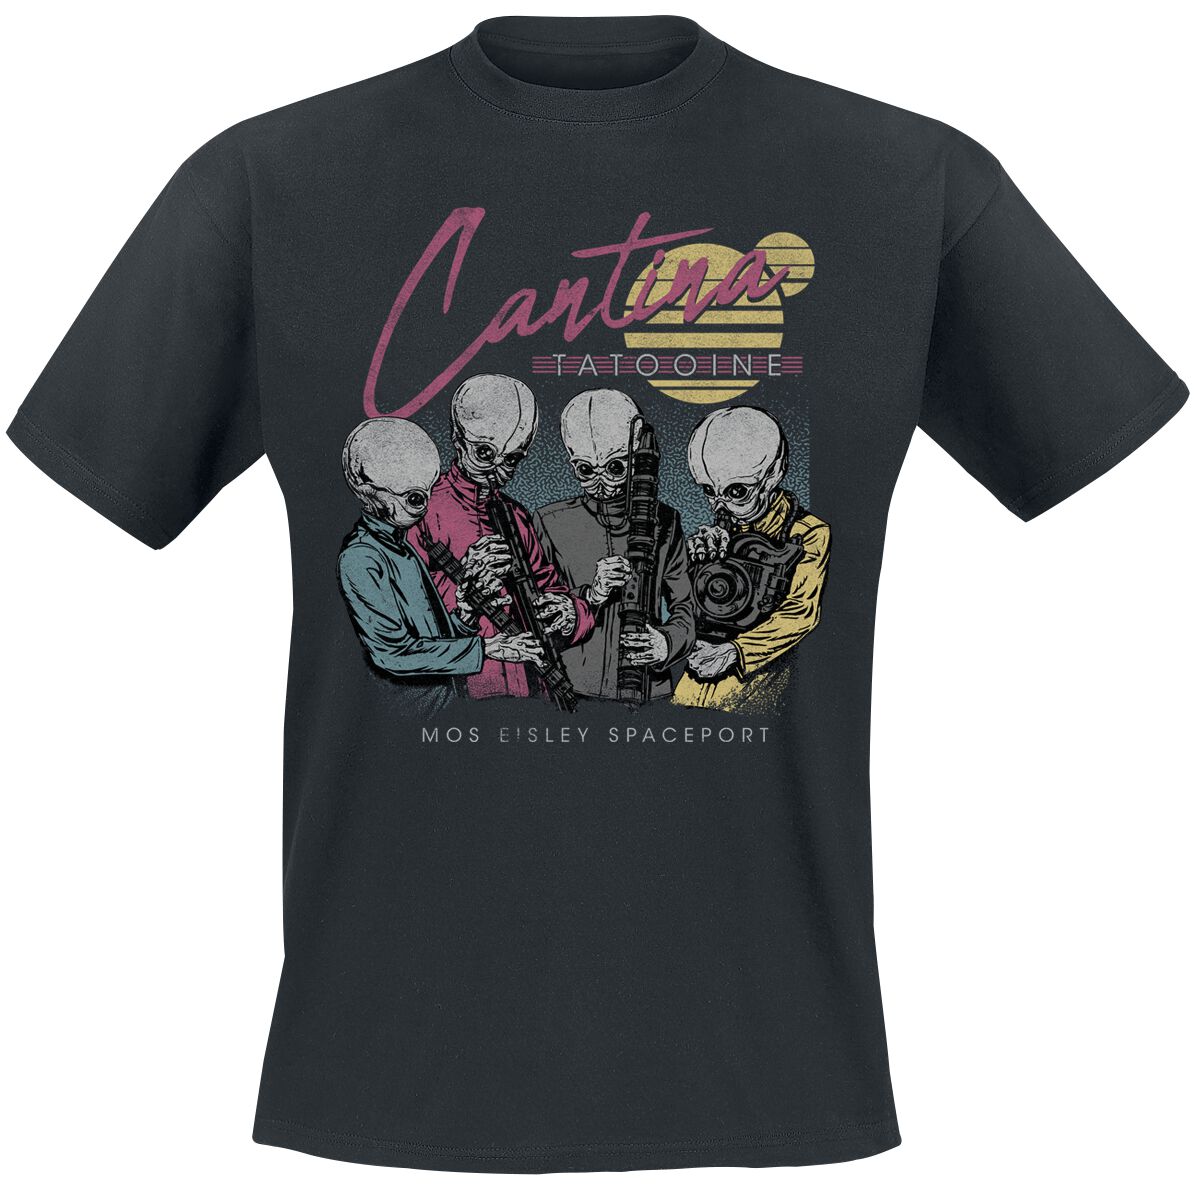 Star Wars T-Shirt - Cantina Miami - S bis 4XL - für Männer - Größe S - schwarz  - EMP exklusives Merchandise!